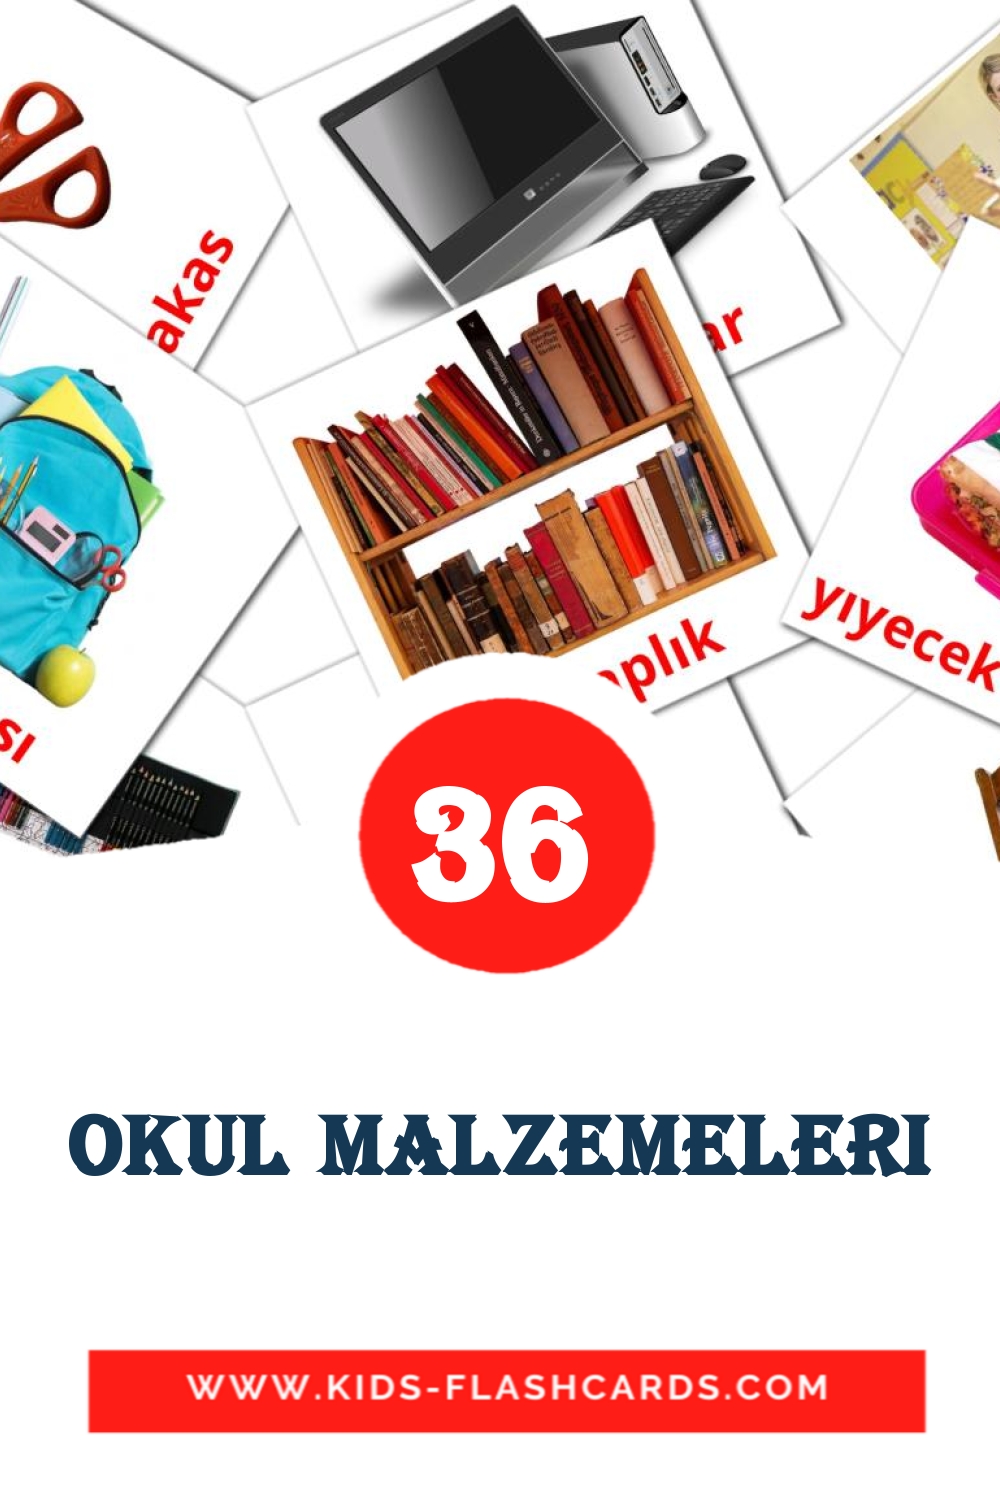 36 carte illustrate di Okul malzemeleri per la scuola materna in turco